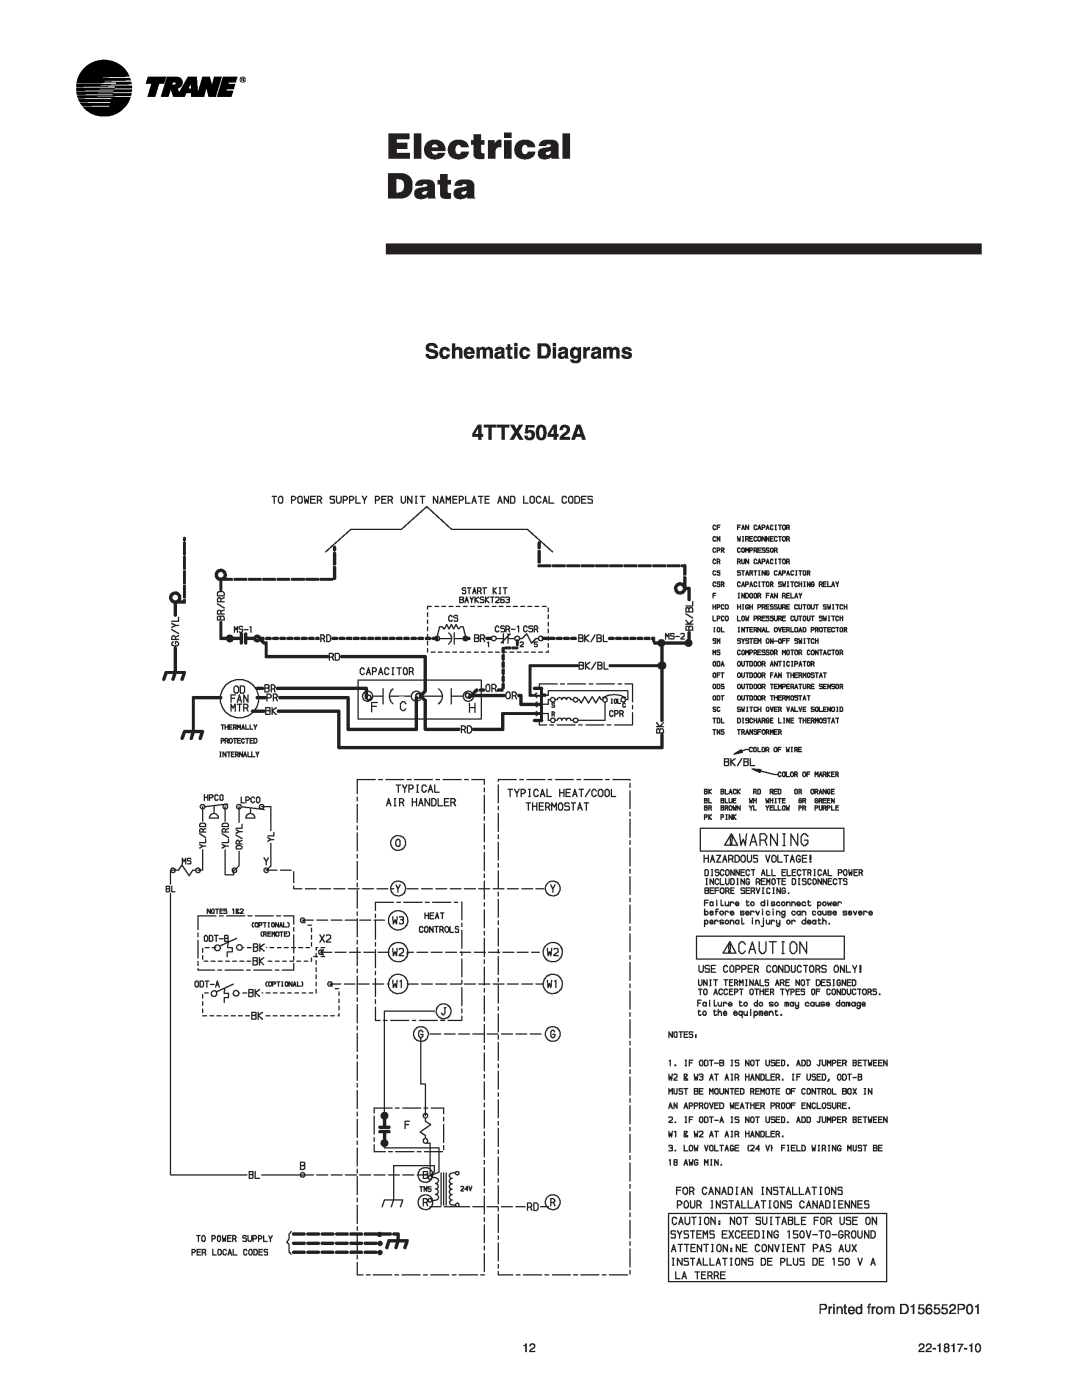 Trane 4TTX5060A1, 4TTX5061E, 4TTX5036A1, 4TTX5042A1 Electrical Data, Schematic Diagrams 4TTX5042A, Printed from D156552P01 